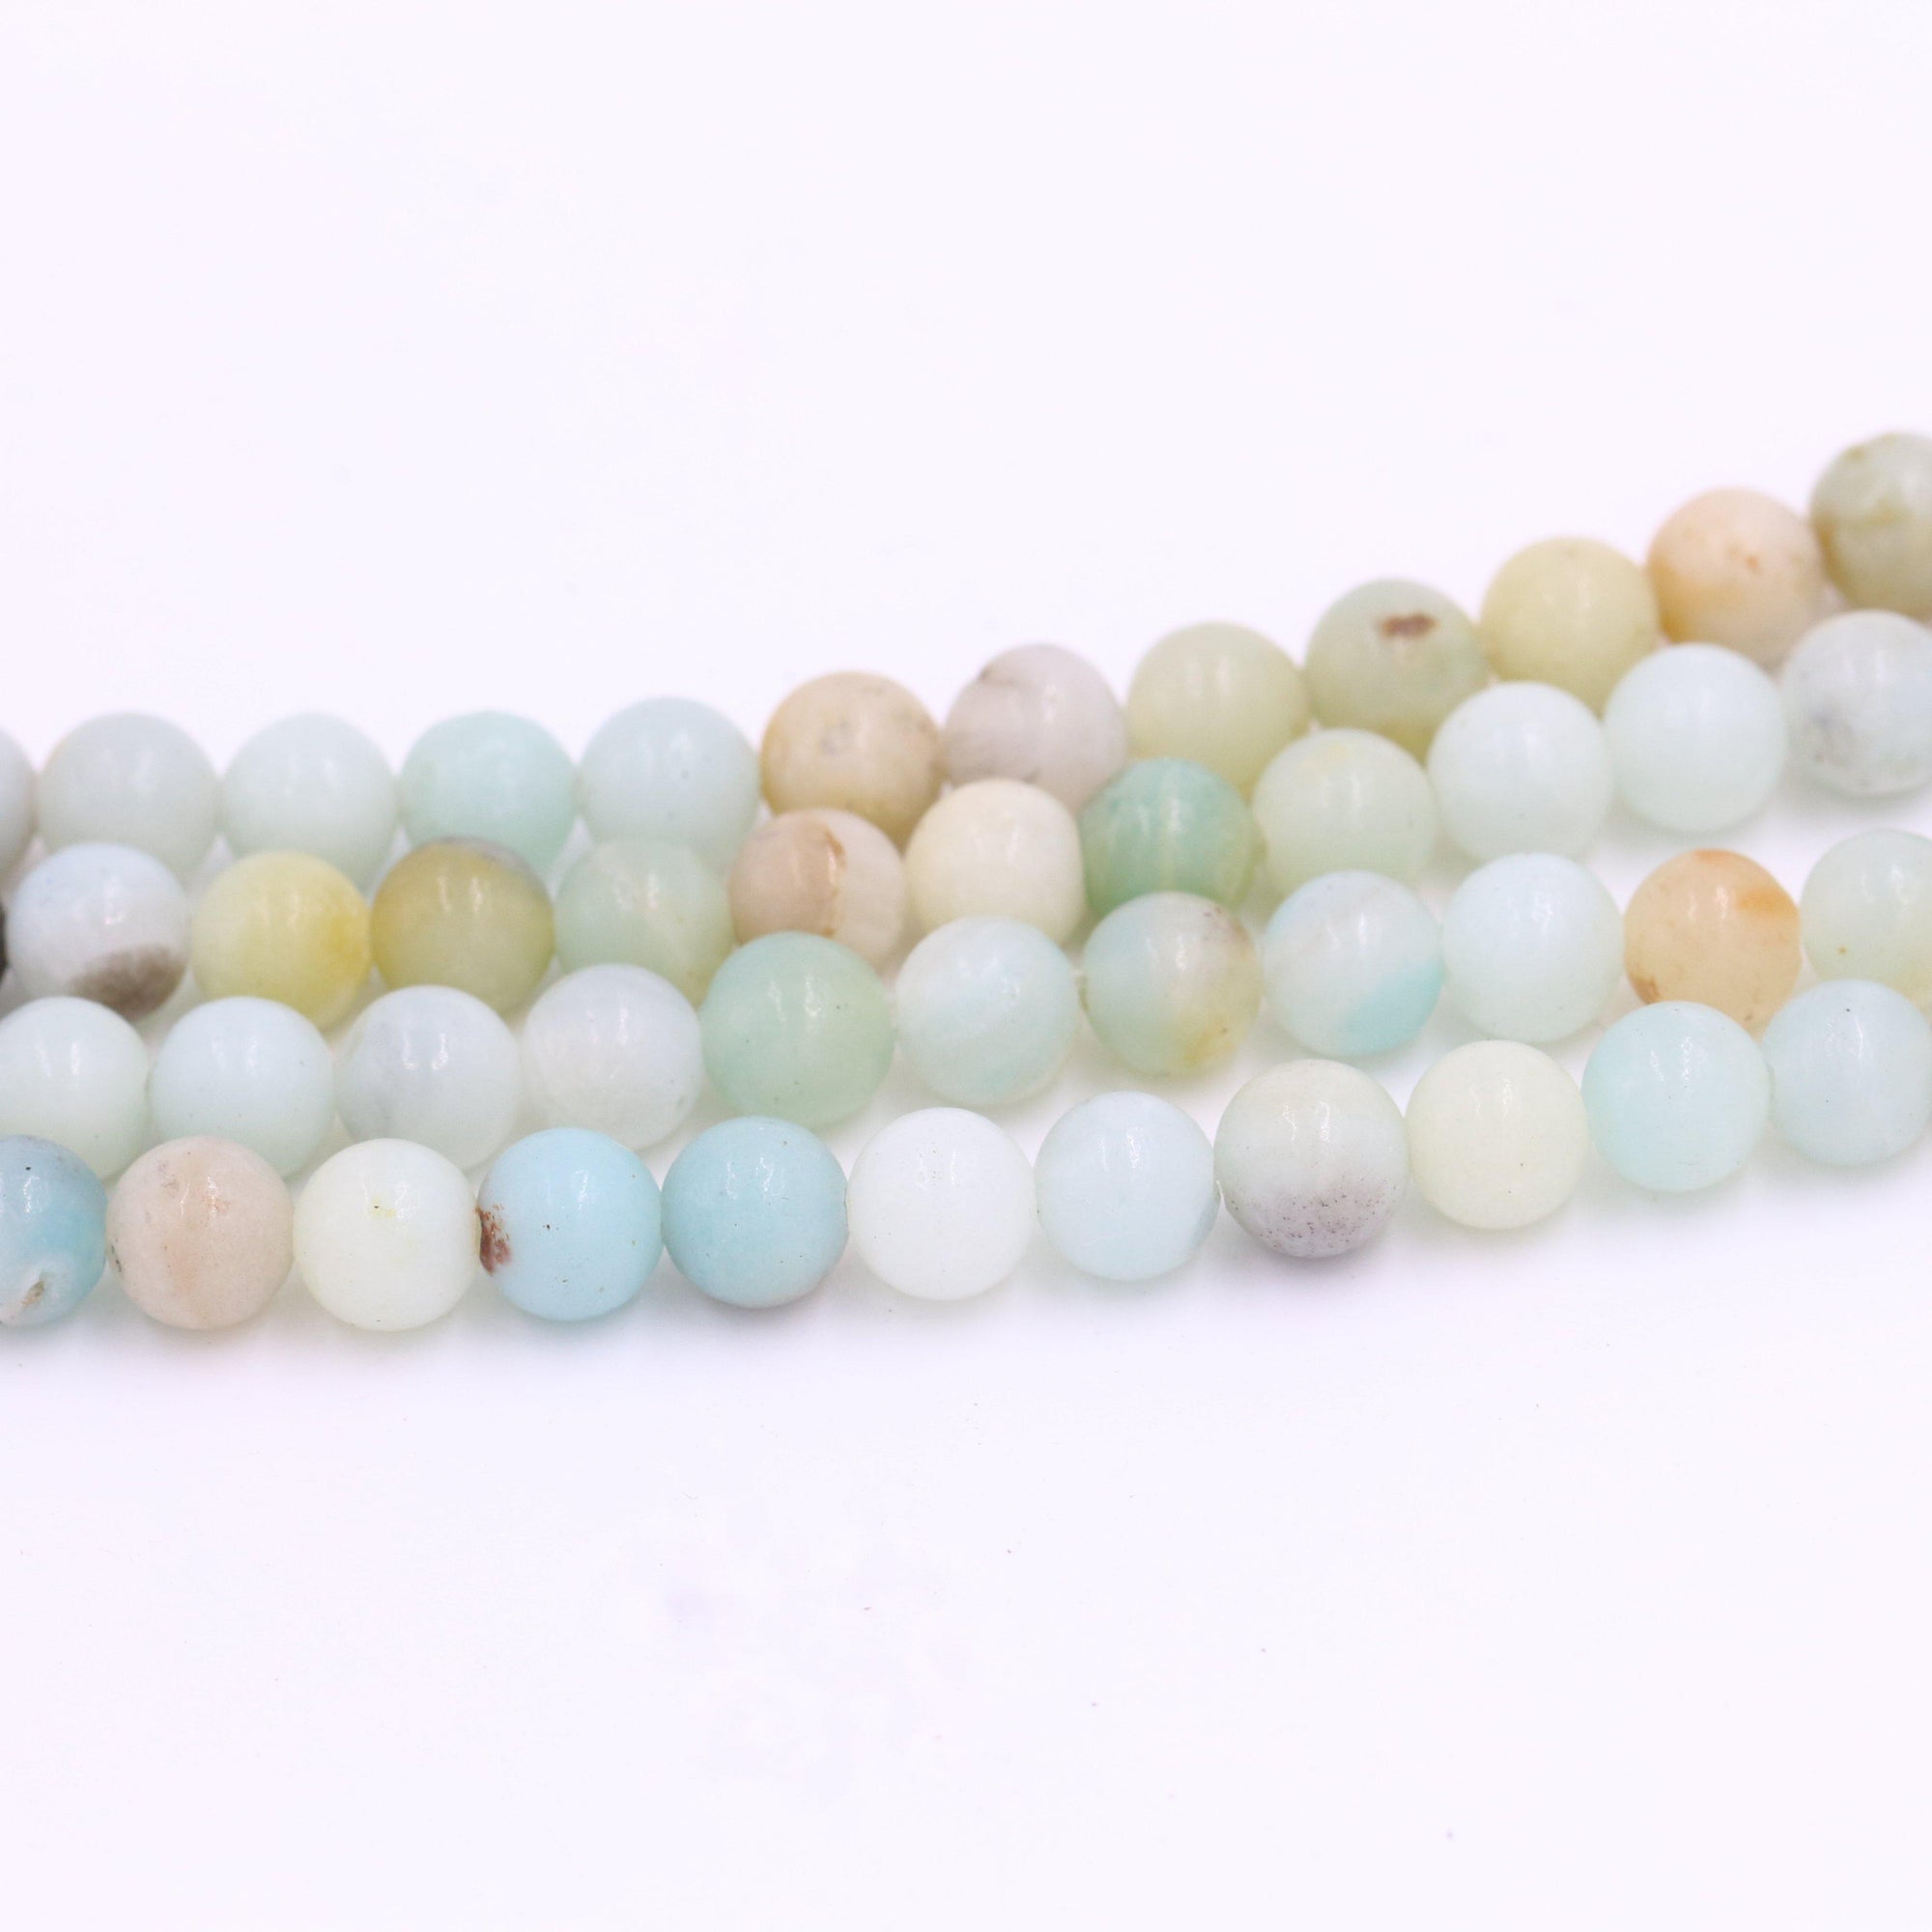 Amazonite mala beads with greens, blues, and grays - MeraKalap Malas